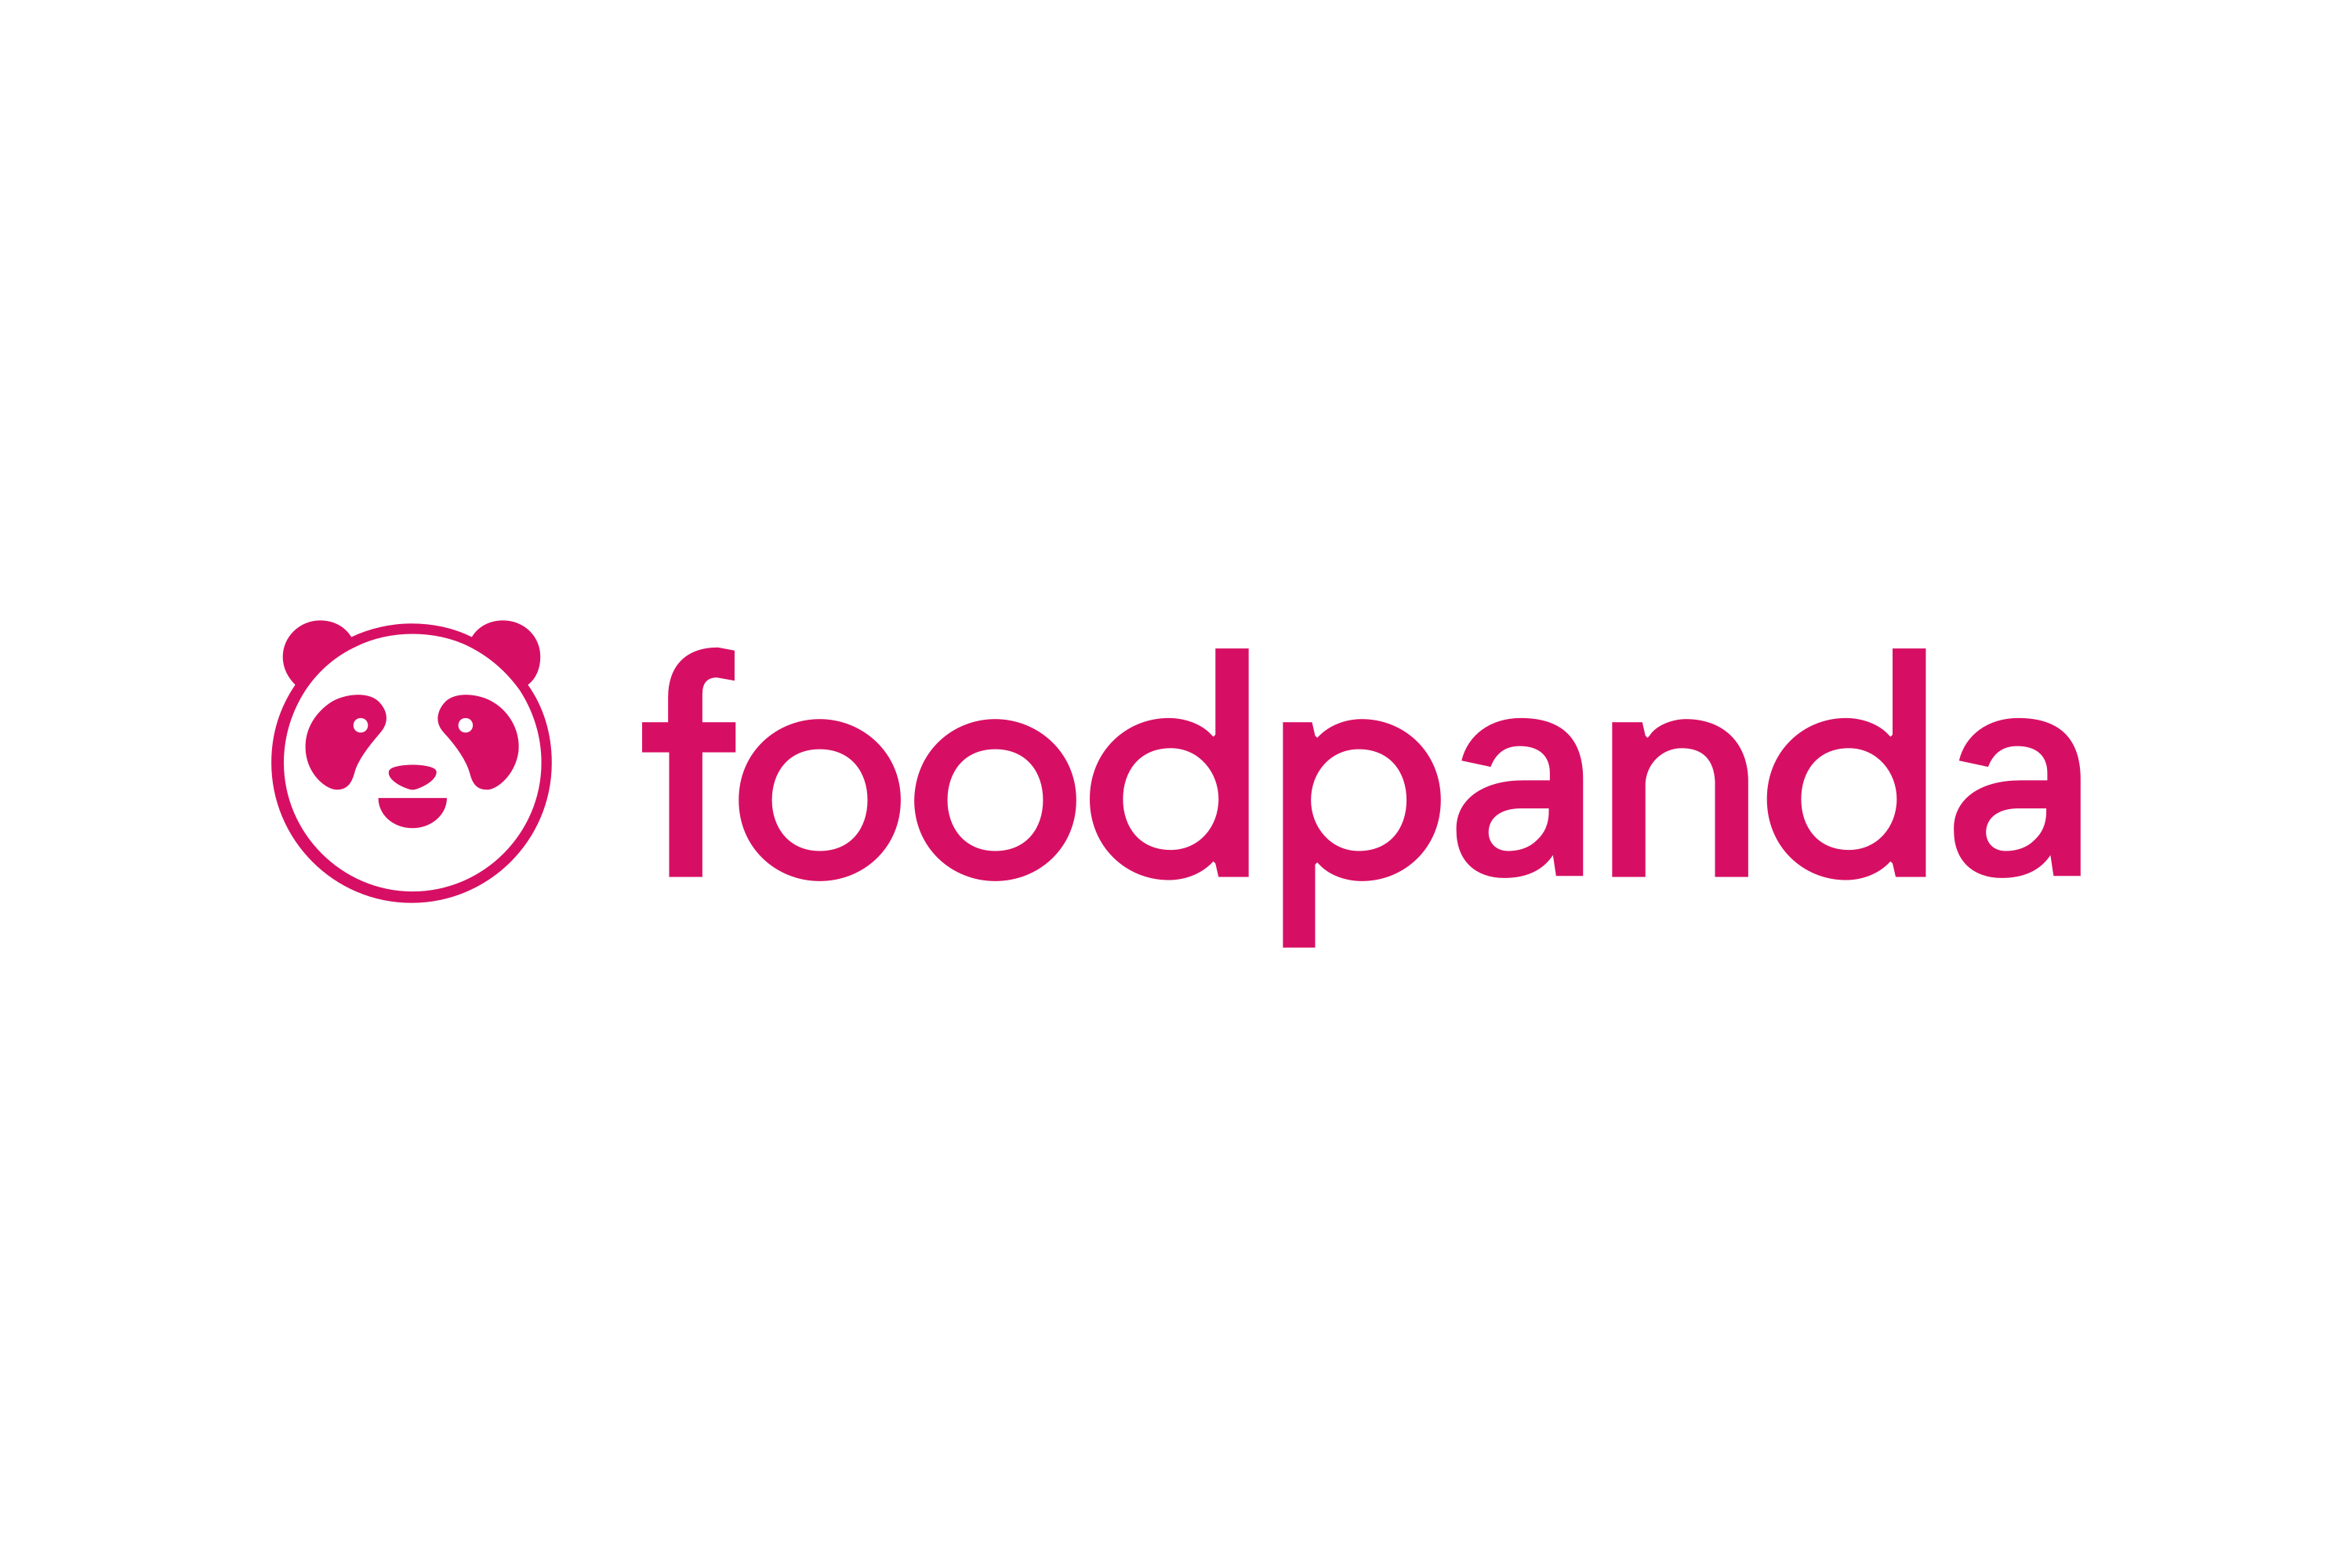 foodpanda Logo - Download Foodpanda Logo in SVG Vector or PNG File Format